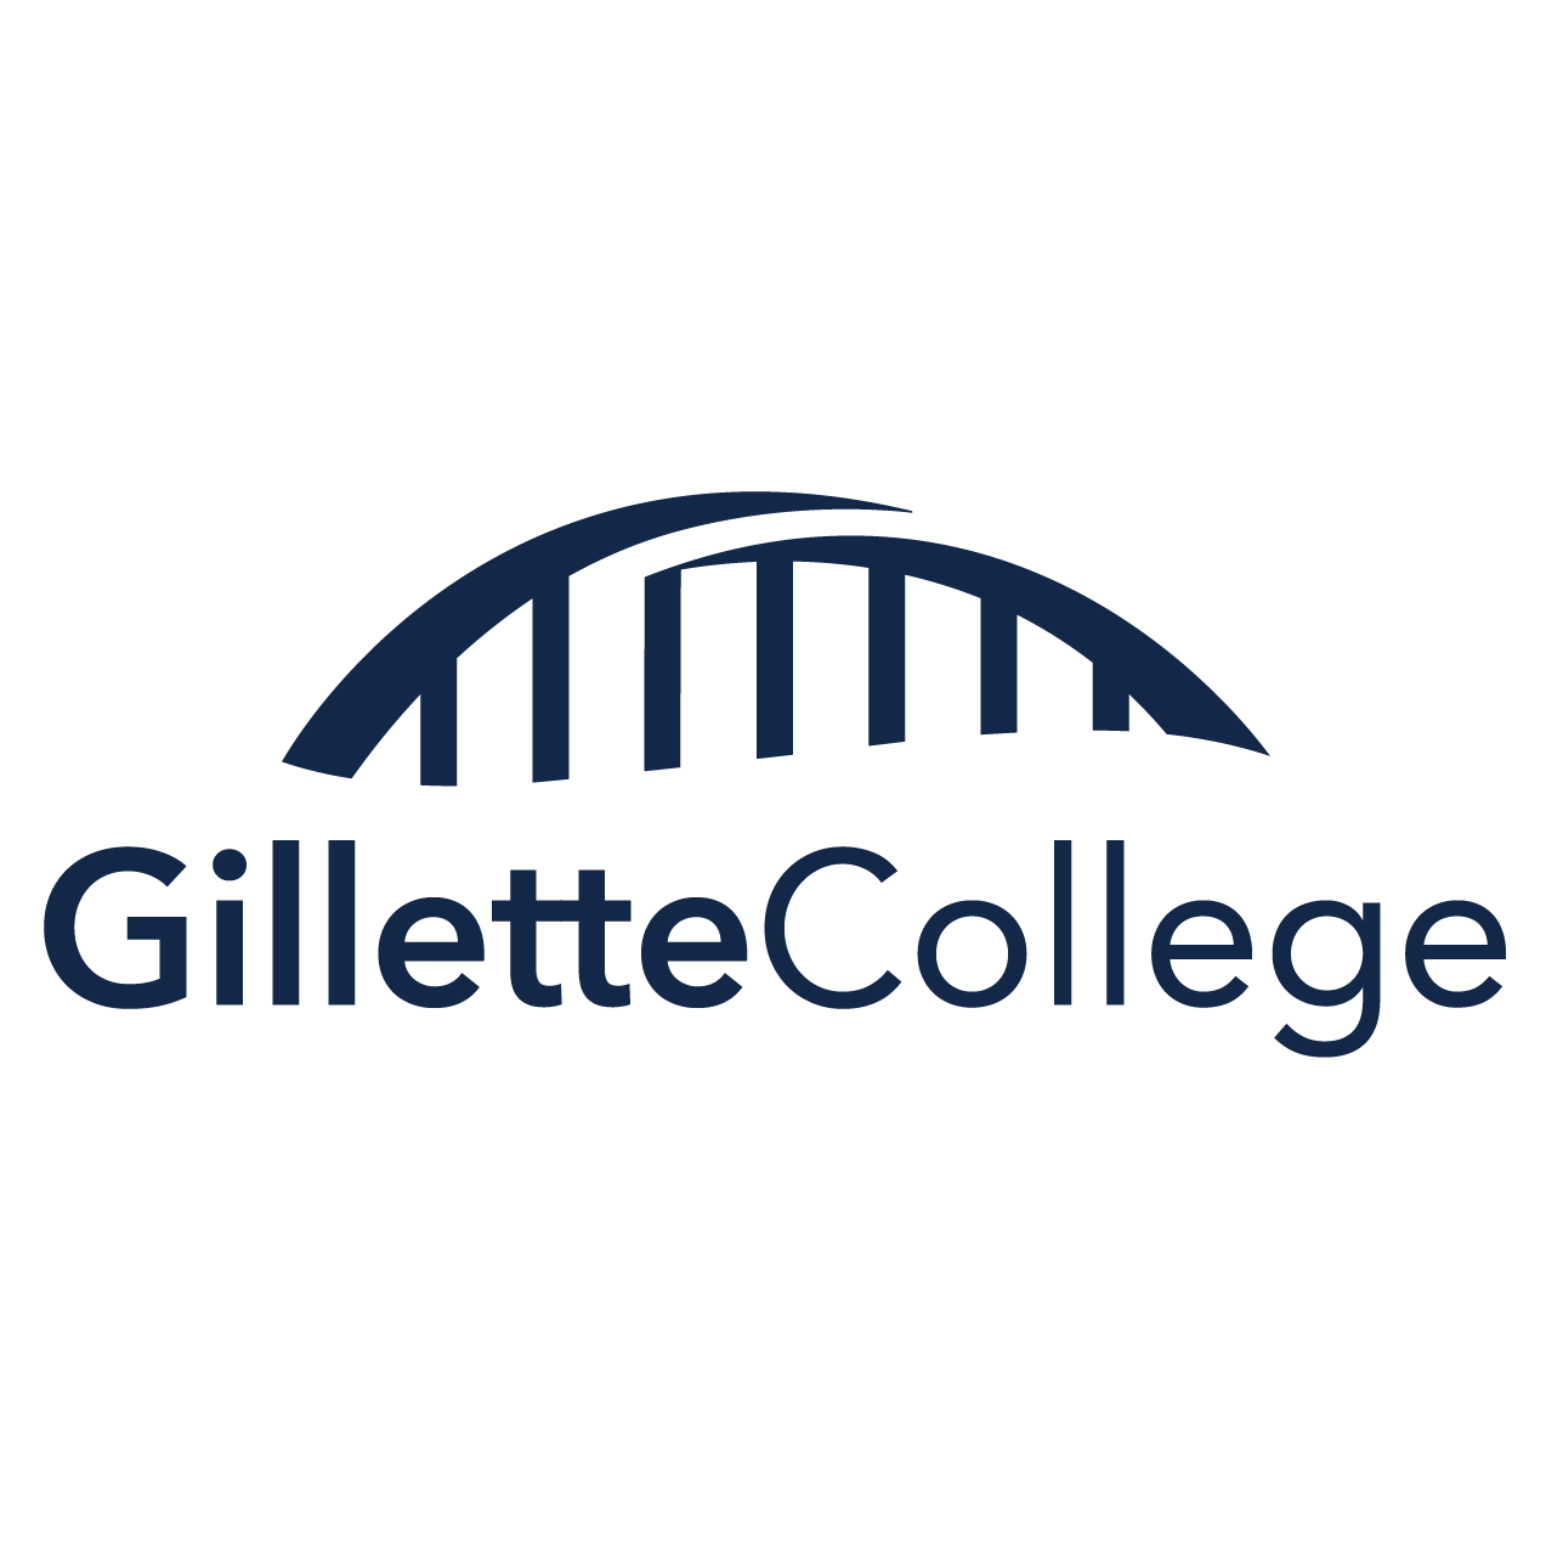 Gillette College